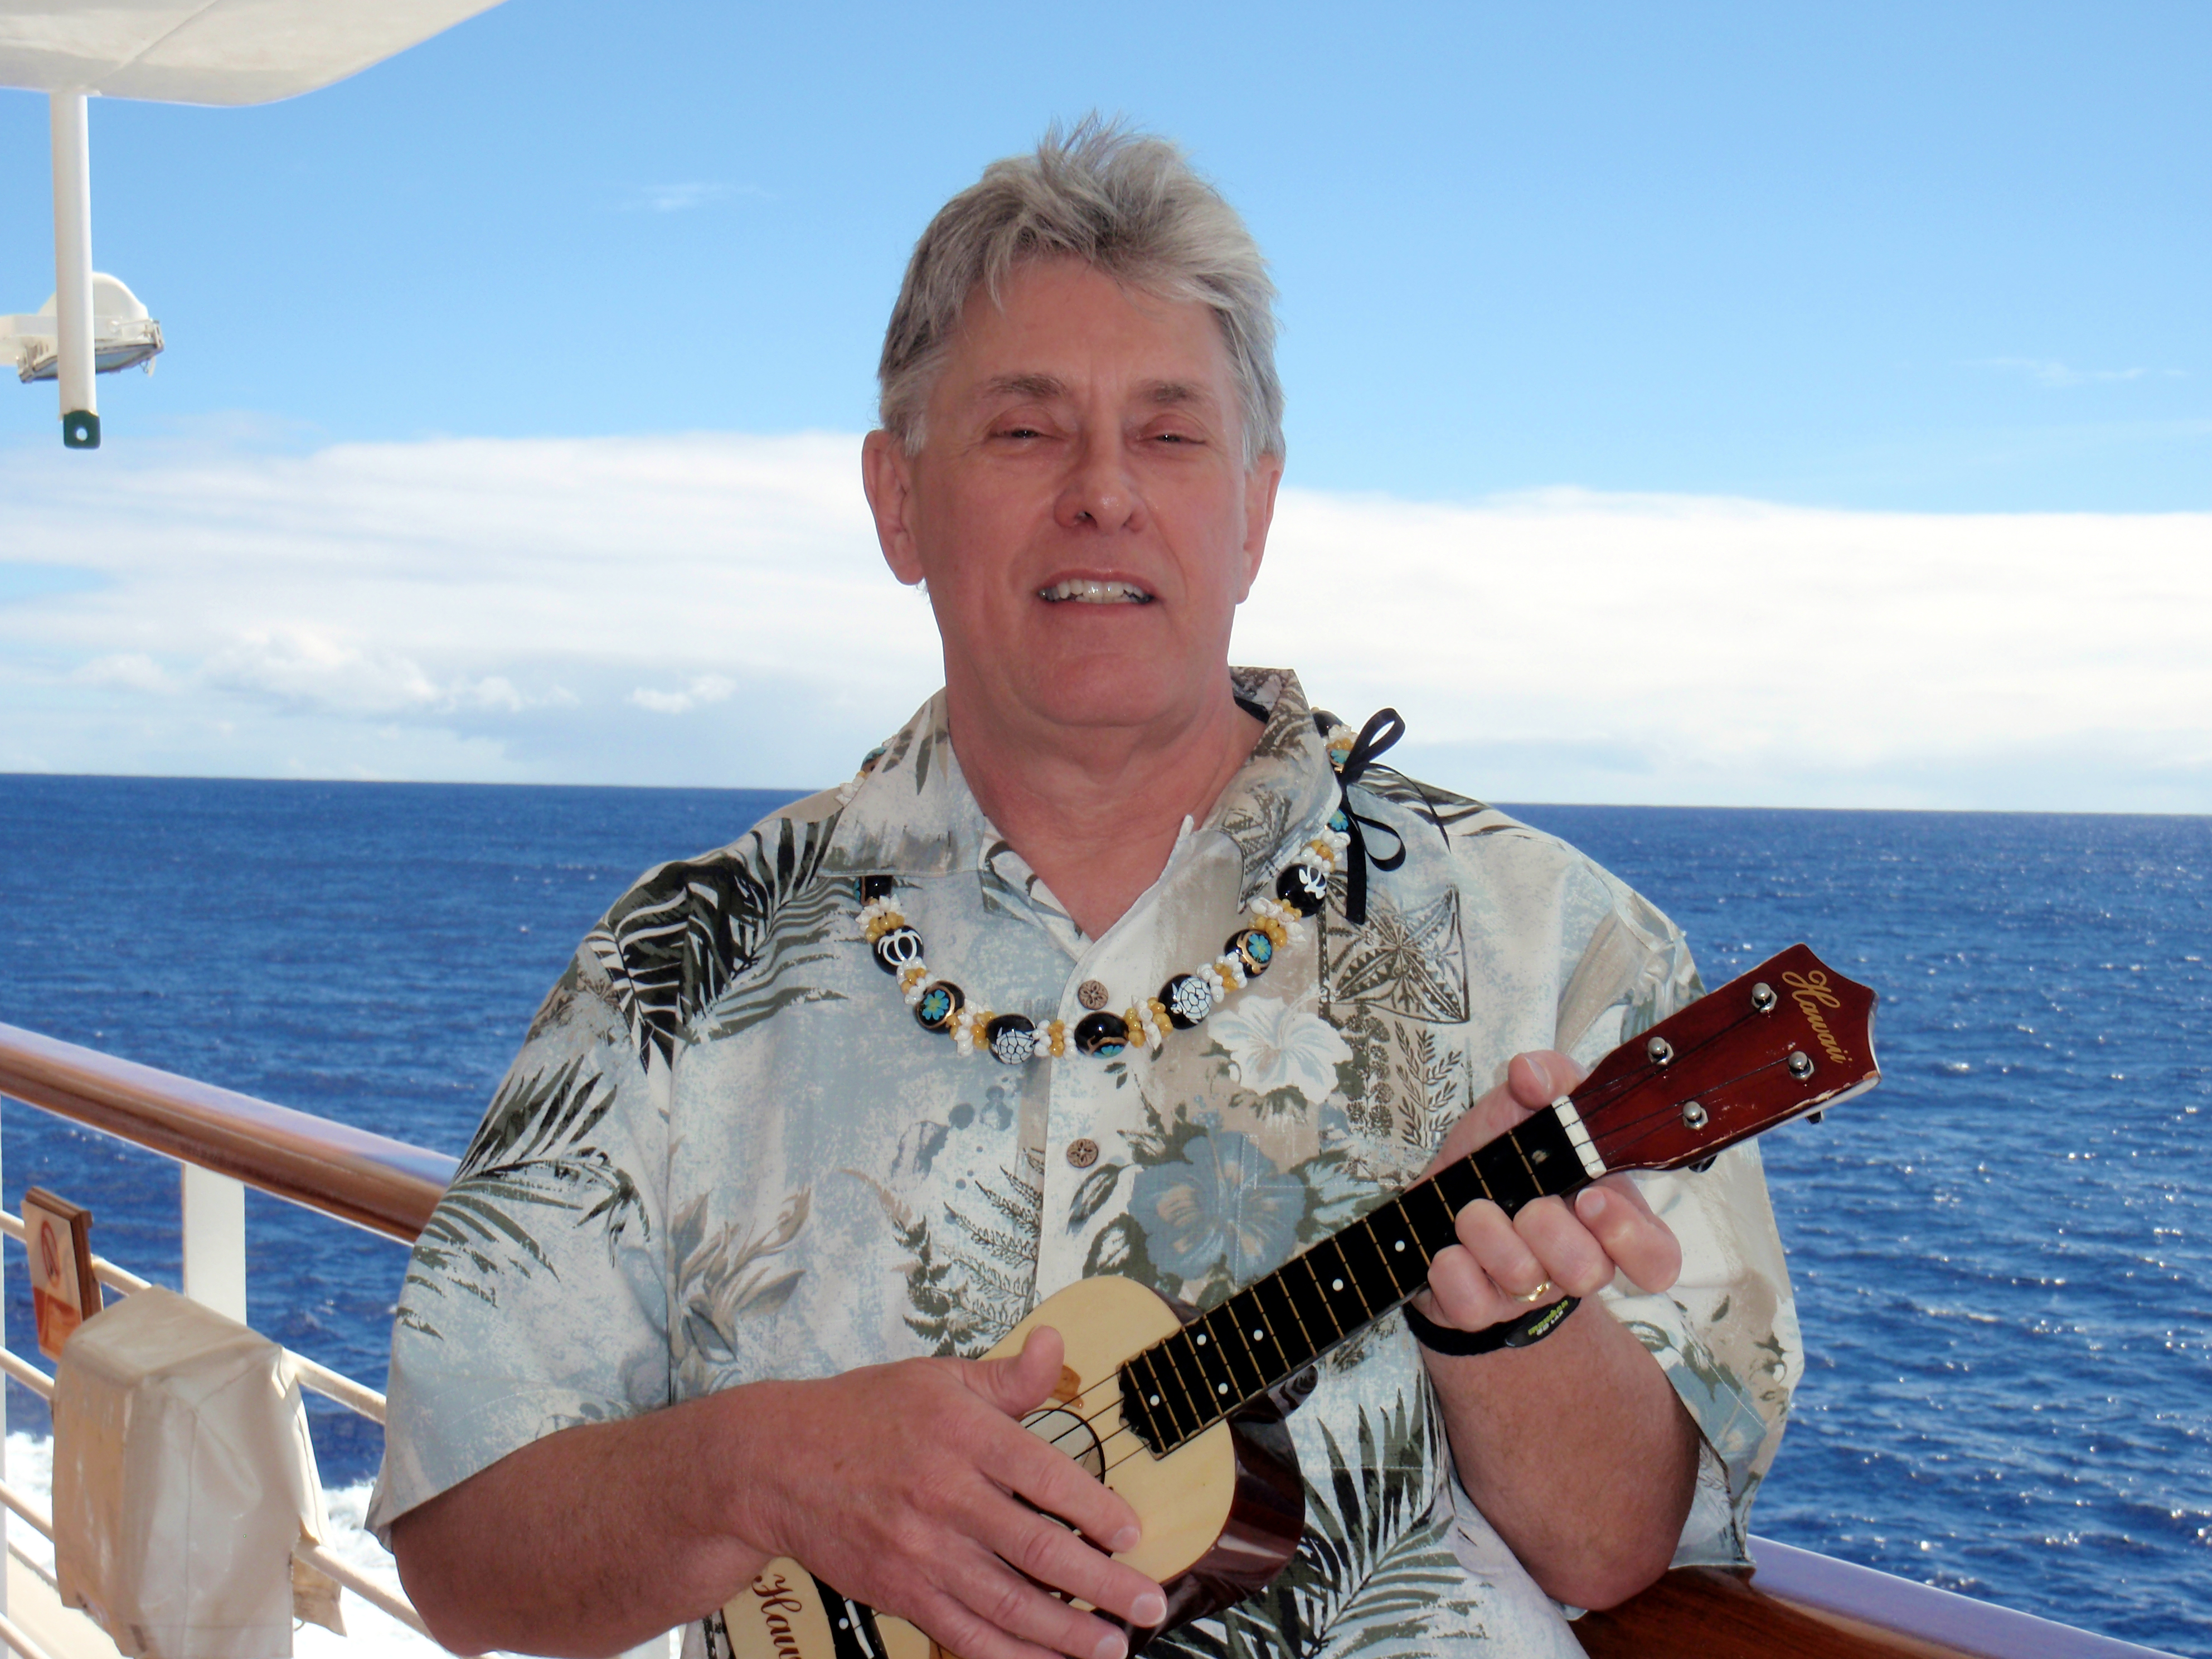 Songdog student with ukulele on a cruise ship in Hawaii